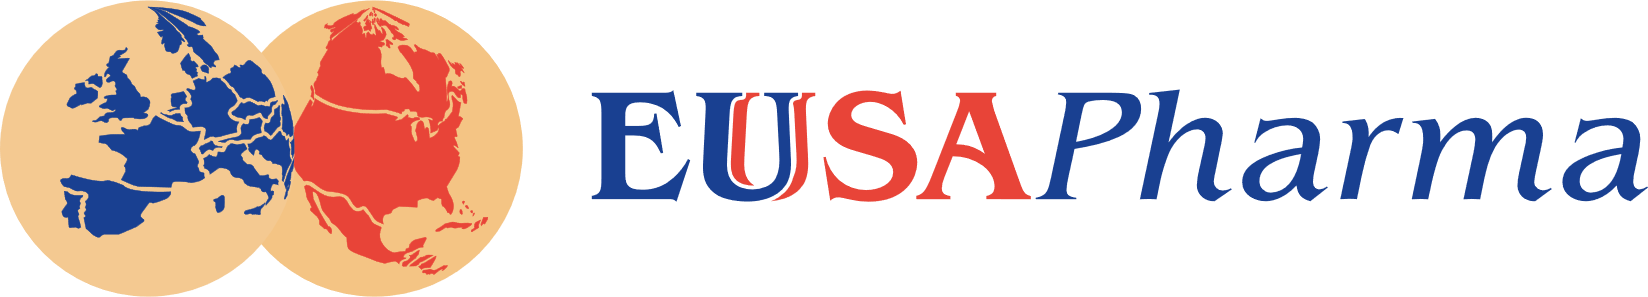 EUSA Pharma - About Us